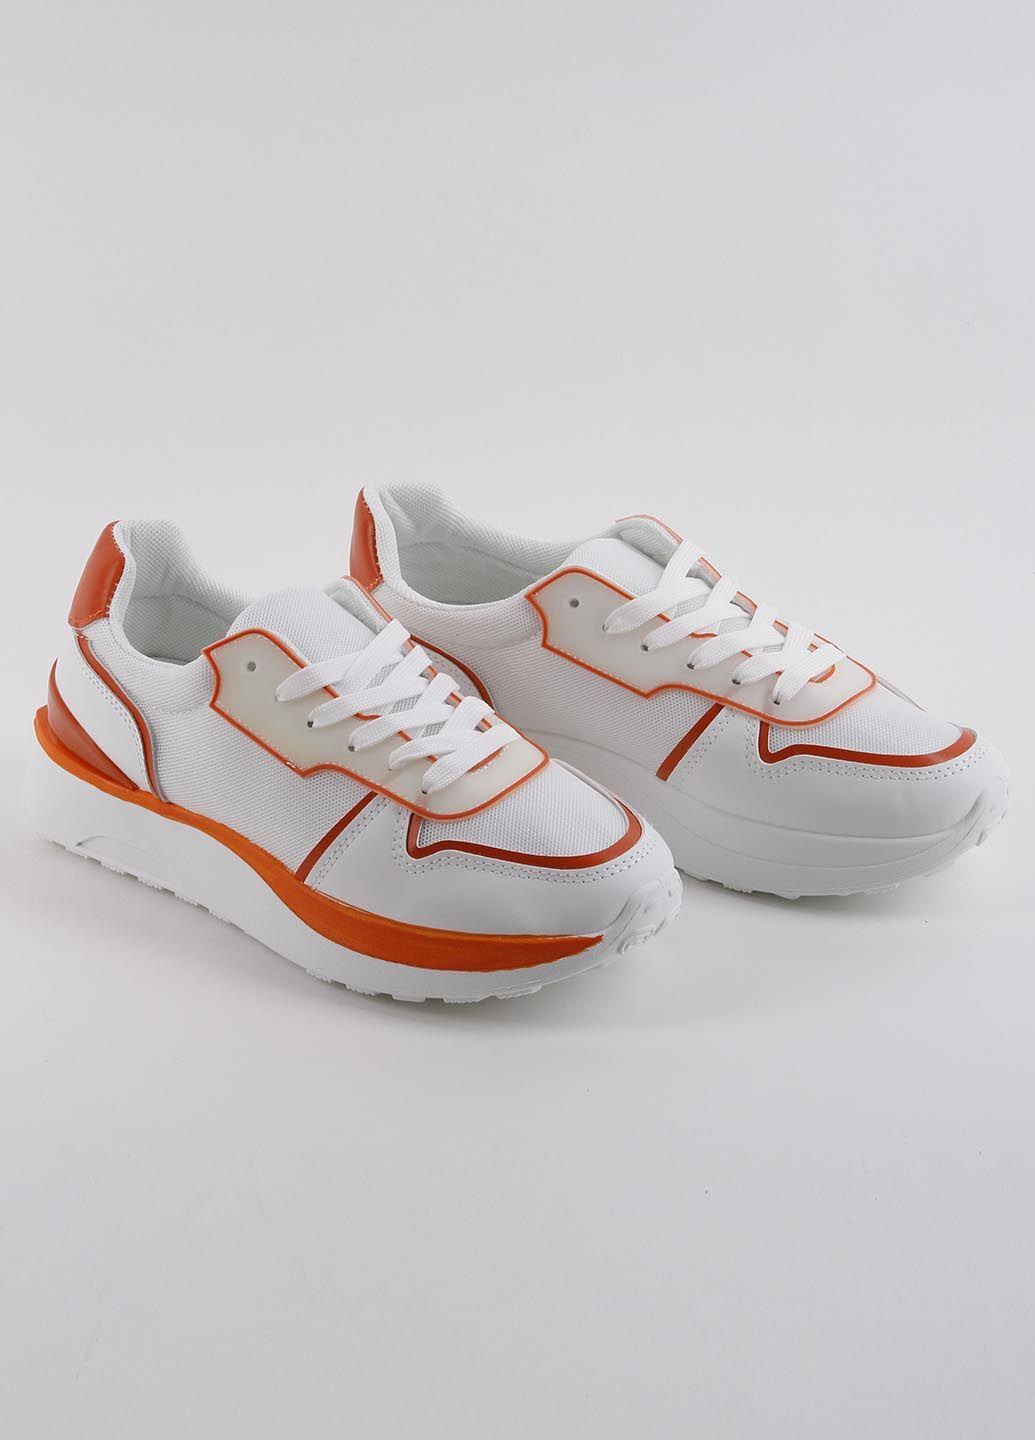 Белые демисезонные кроссовки женские оранжевый 339026 Power